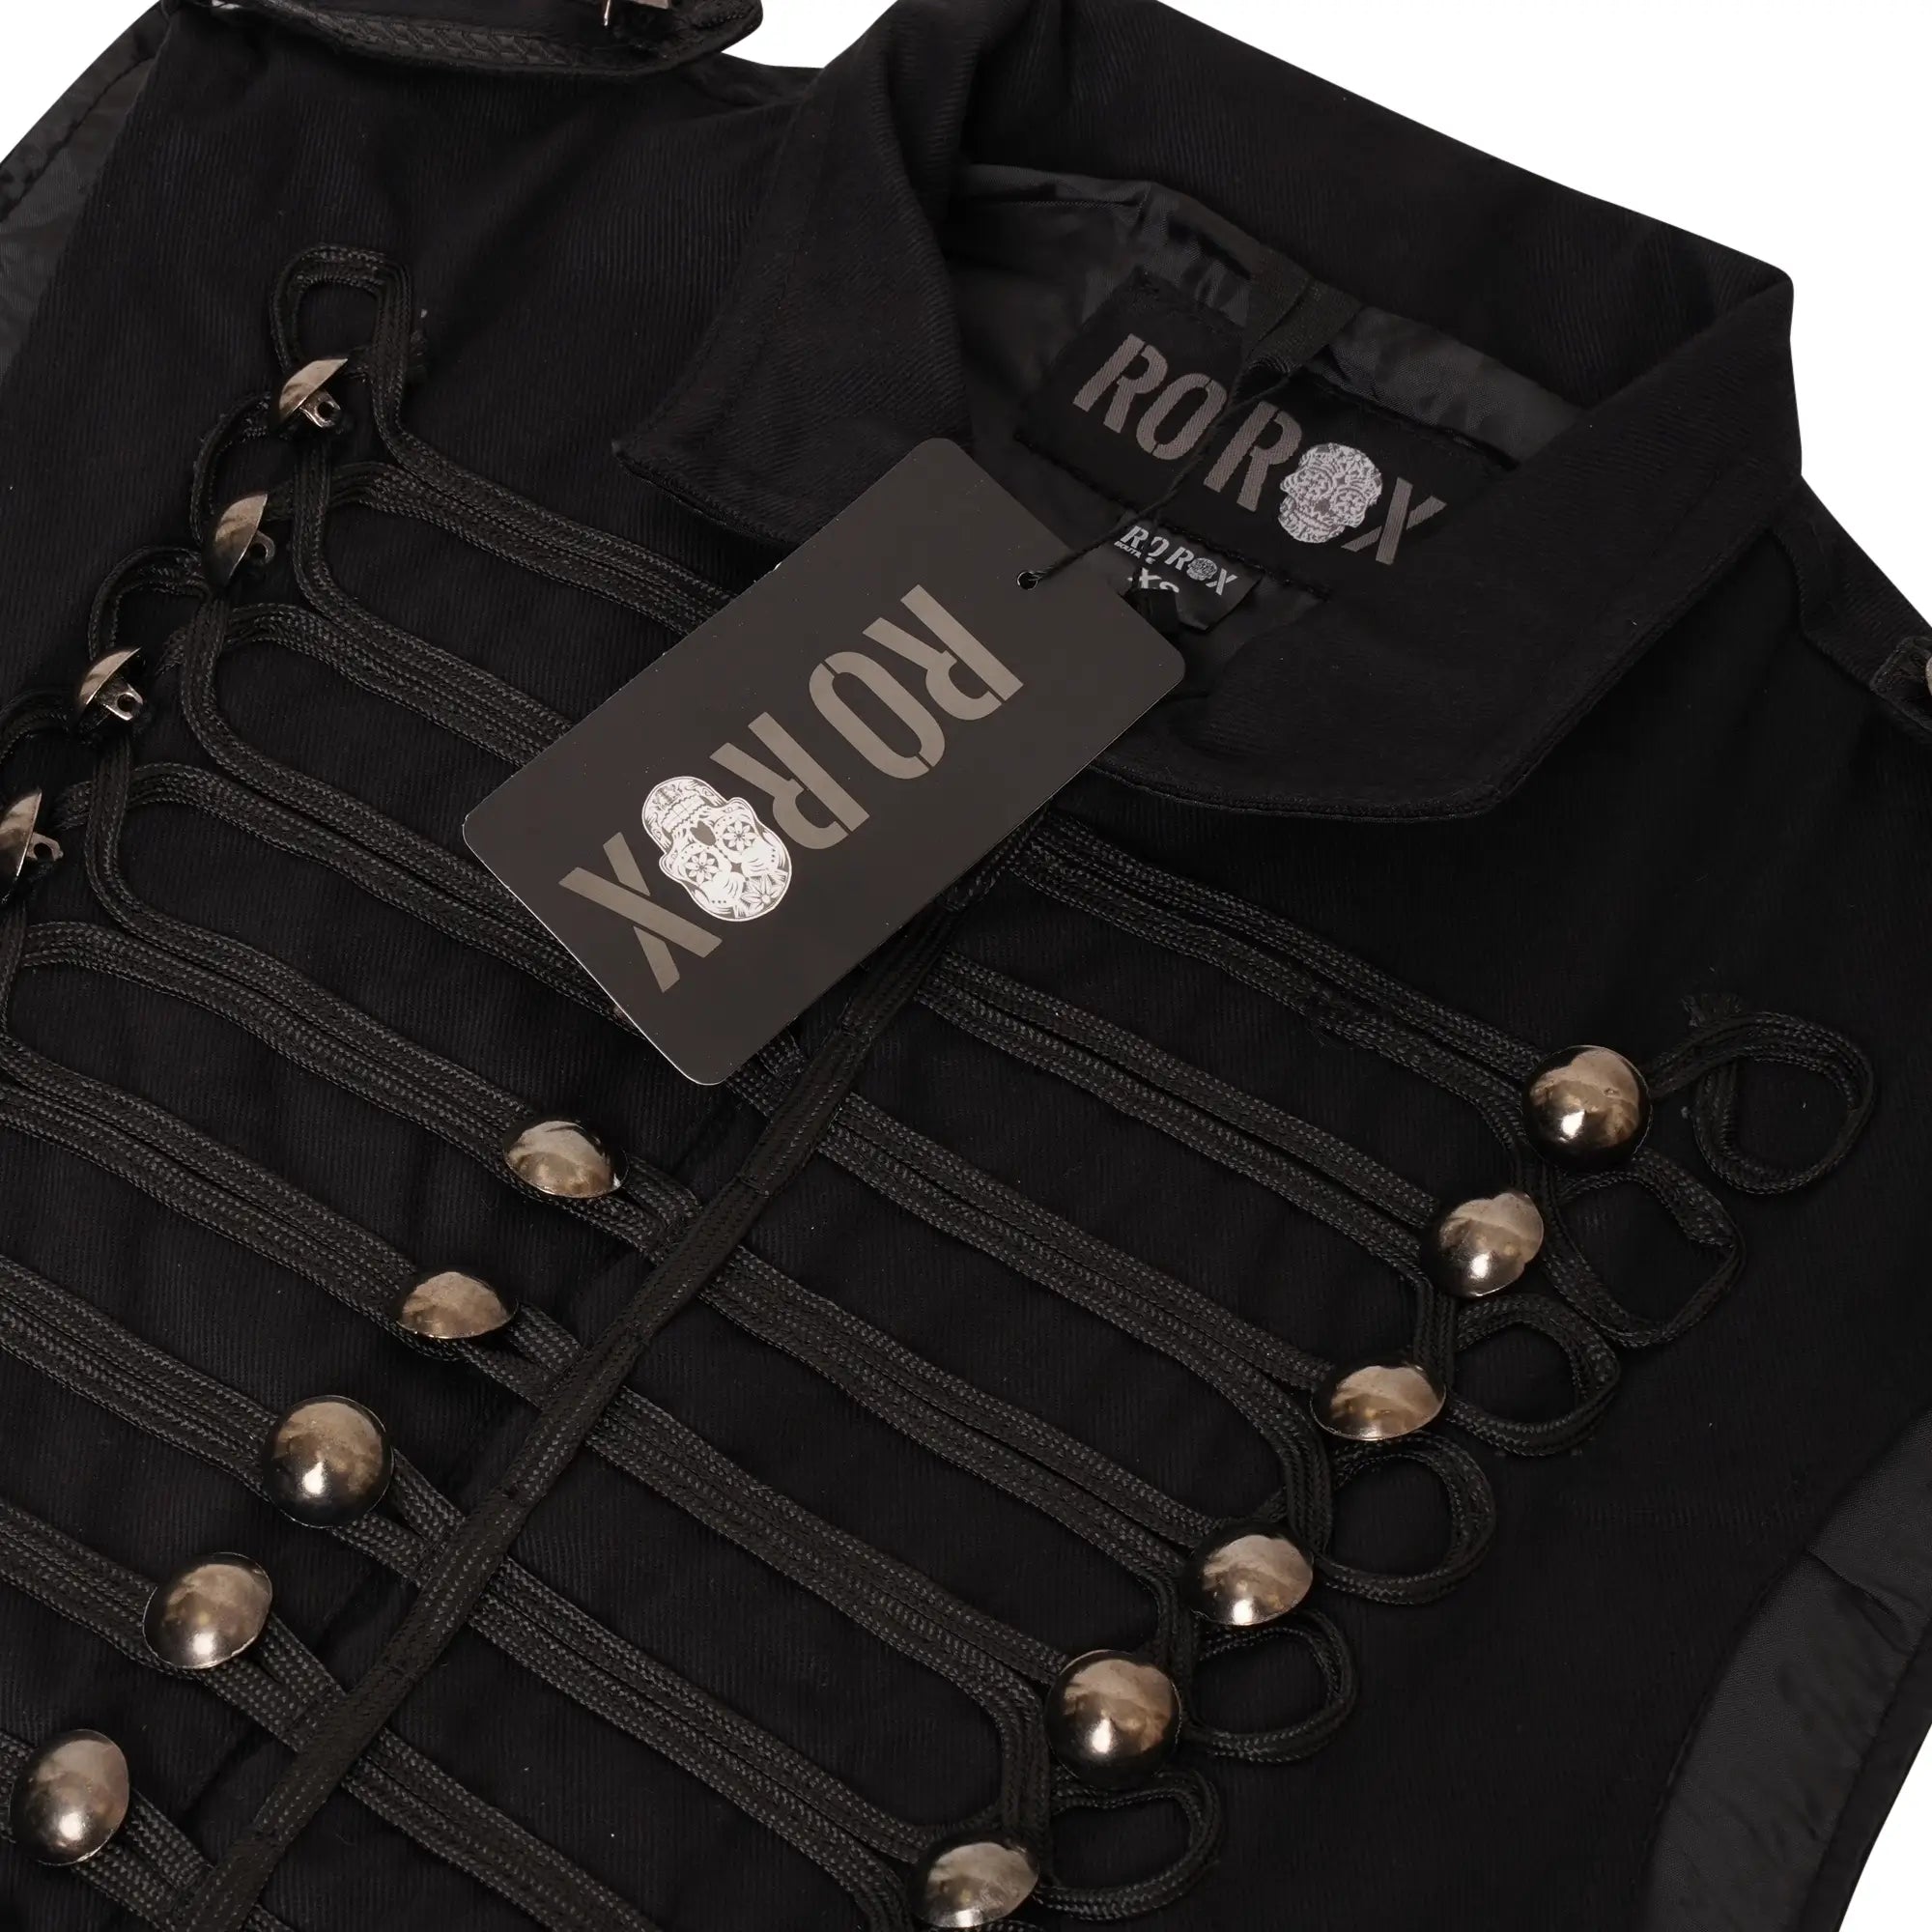 Ro Rox Men's Uniform Military Parade Sleeveless Jacket